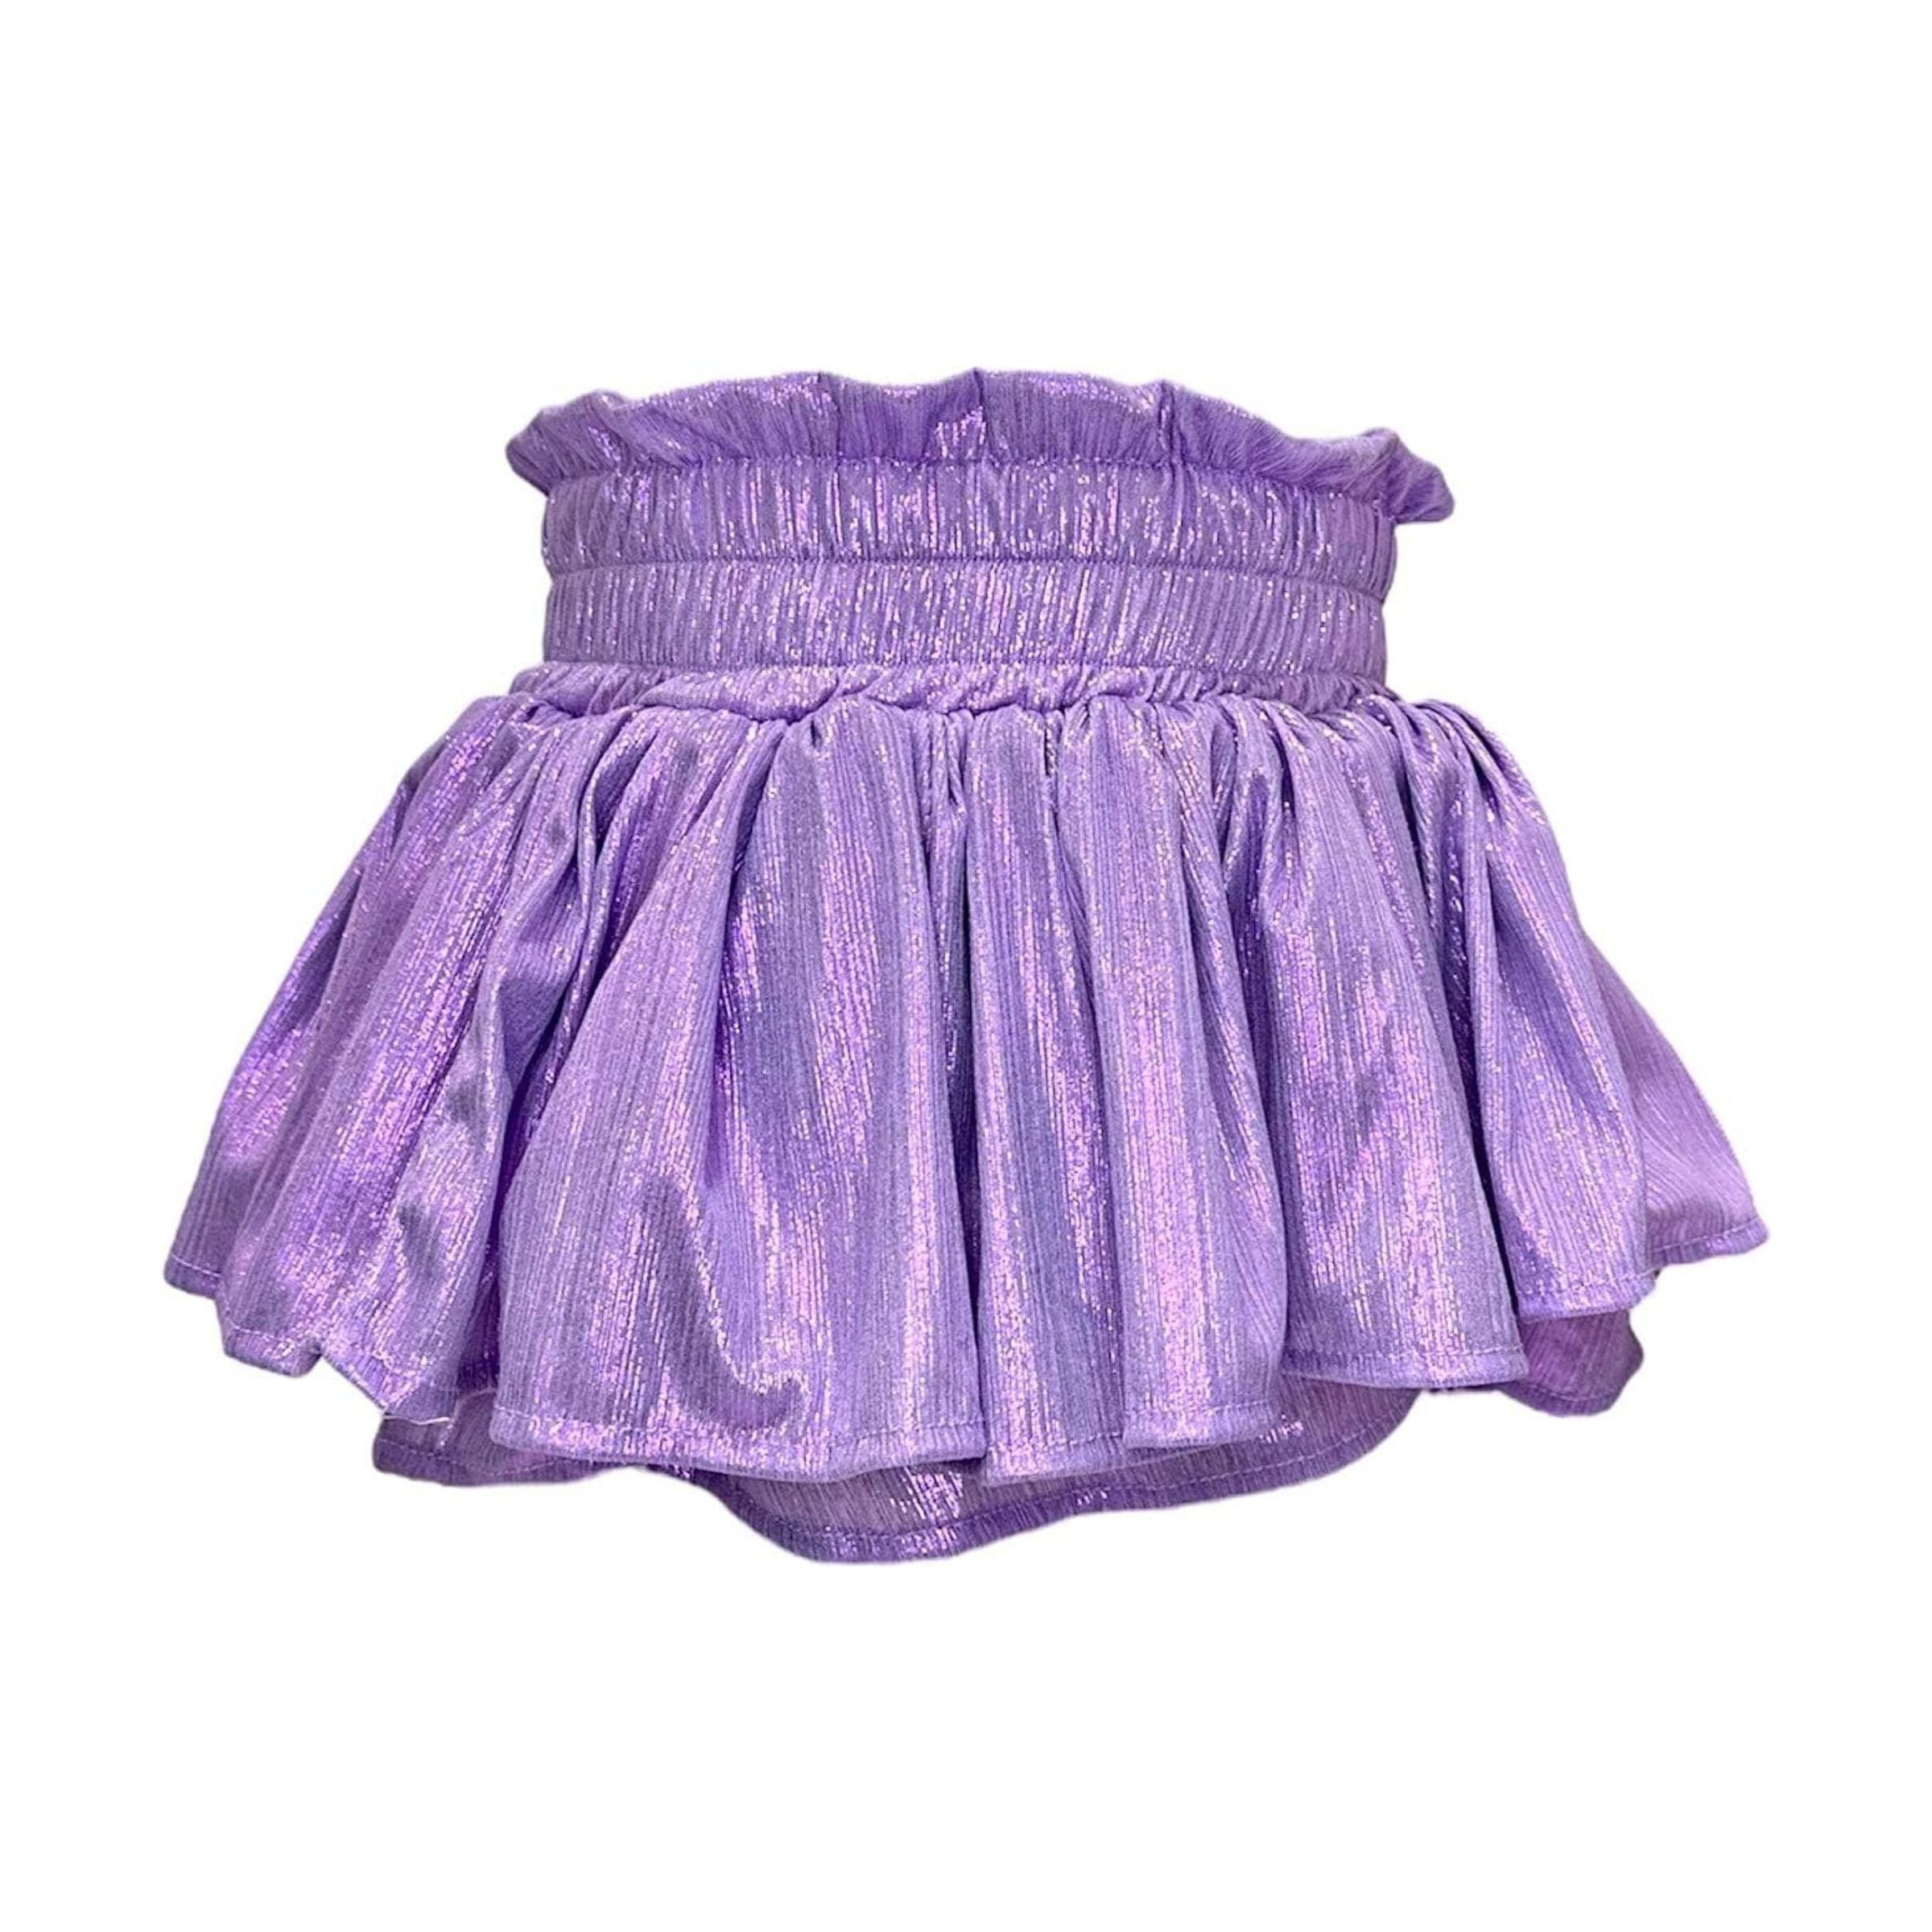 Metallic Skirt - Lavender